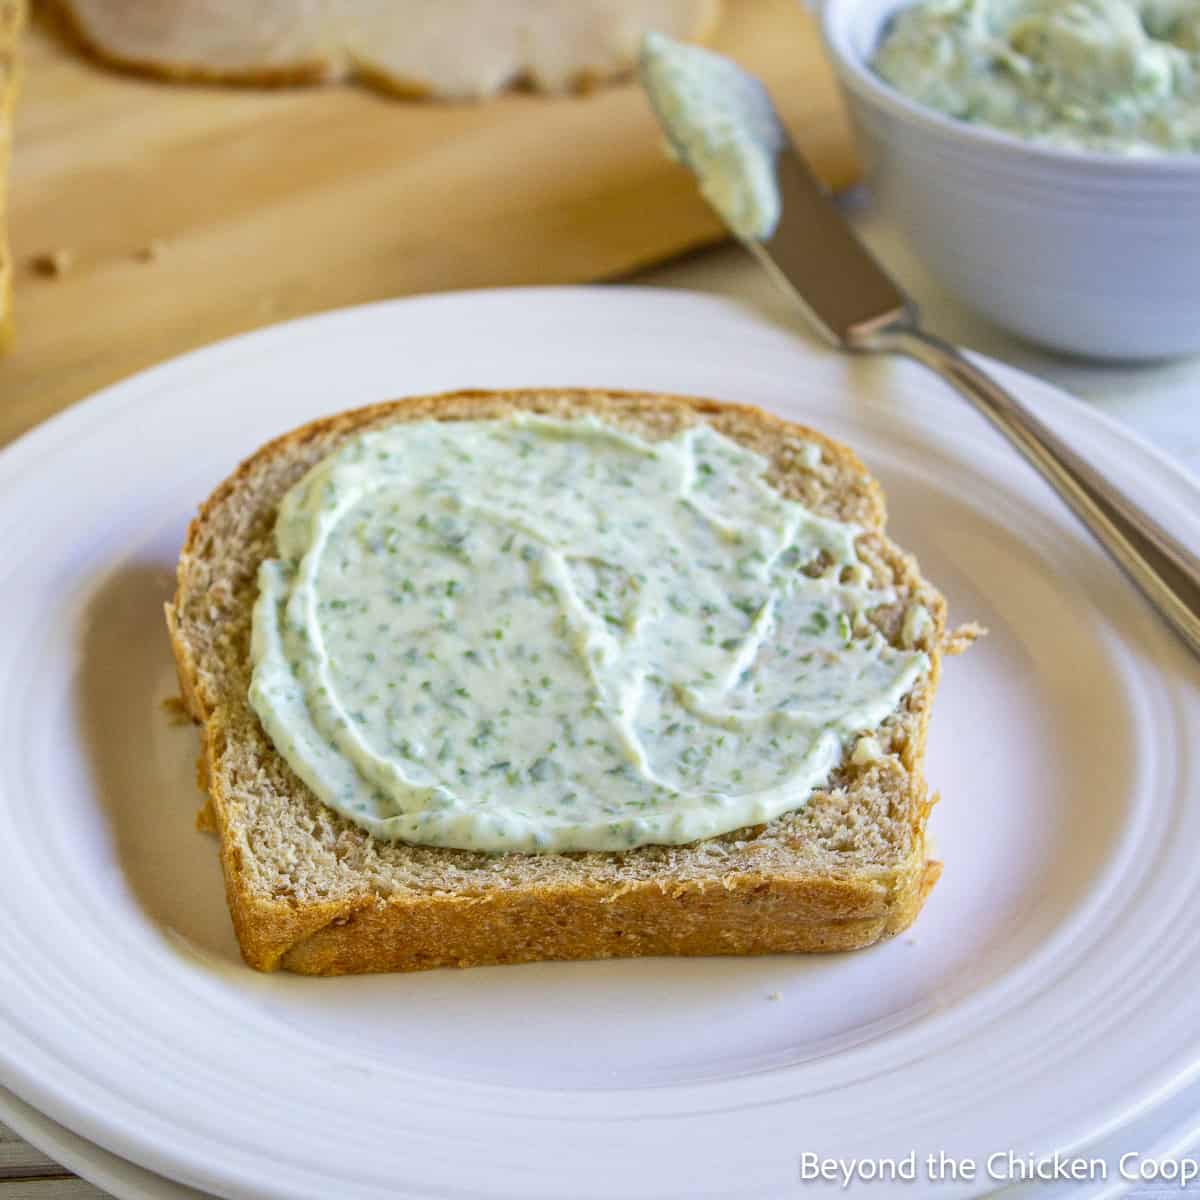 Basil mayonnaise spread on a piece of bread. 